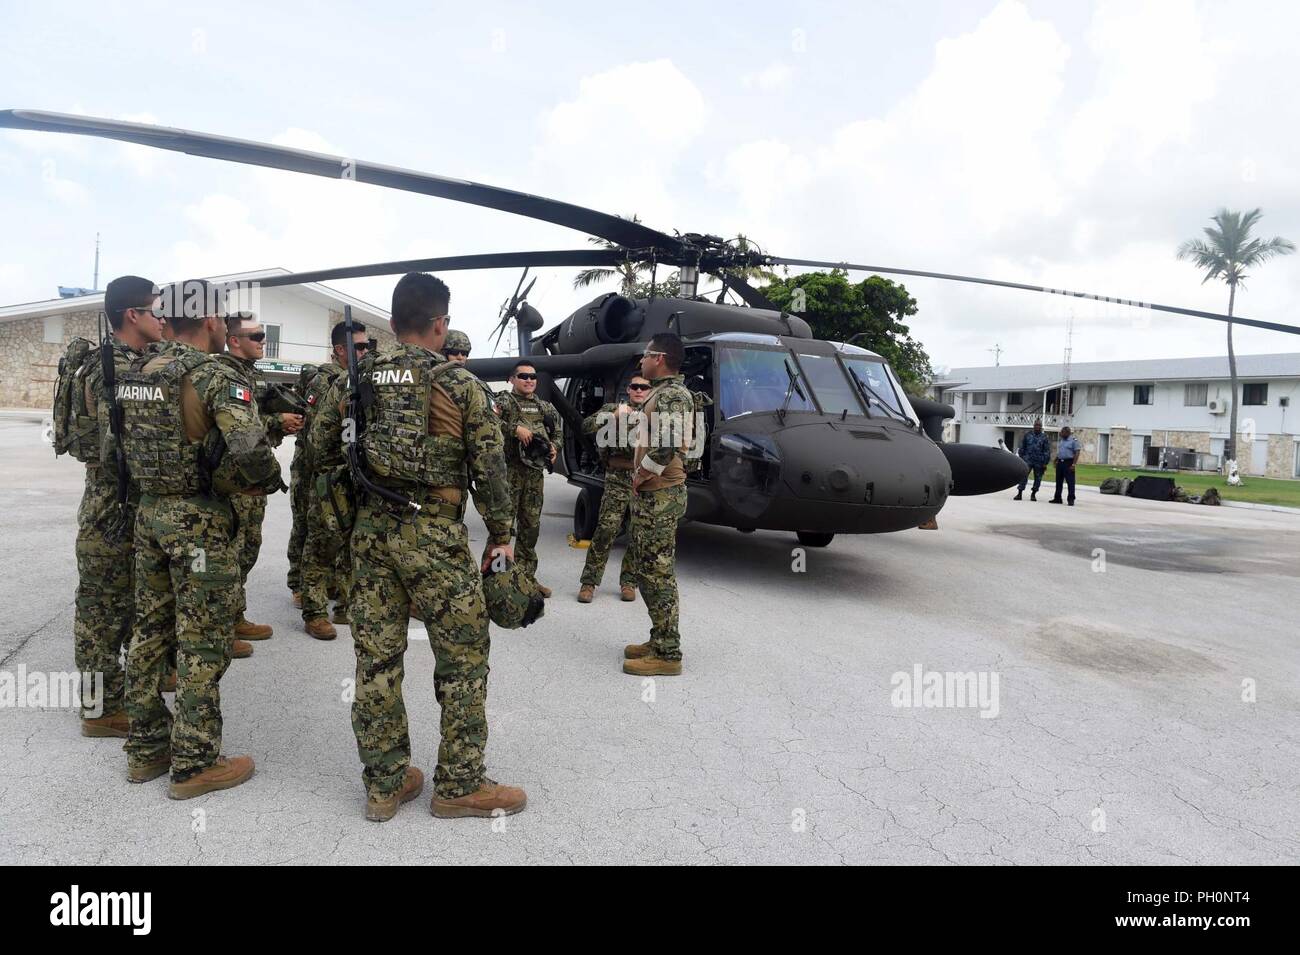 Bahamas (17. Juni 2018) Mexikanische Marines sprechen während einer UH-60 Blackhawk Hubschrauber Einarbeitung und kalt - last Schulungsveranstaltung an Bord der Royal Bahamas's Defence Force Coral Harbour Base als Teil der Tradewinds 2018. Tradewinds ist ein US Southern Command gesponsert Übung, die Teilnehmenden karibischen Nationen die Gelegenheit, Sicherheit und Disaster Response Fähigkeiten zu verbessern. Der Fokus liegt in diesem Jahr bei der Bekämpfung der grenzüberschreitenden organisierten Kriminalität in der Region. Stockfoto